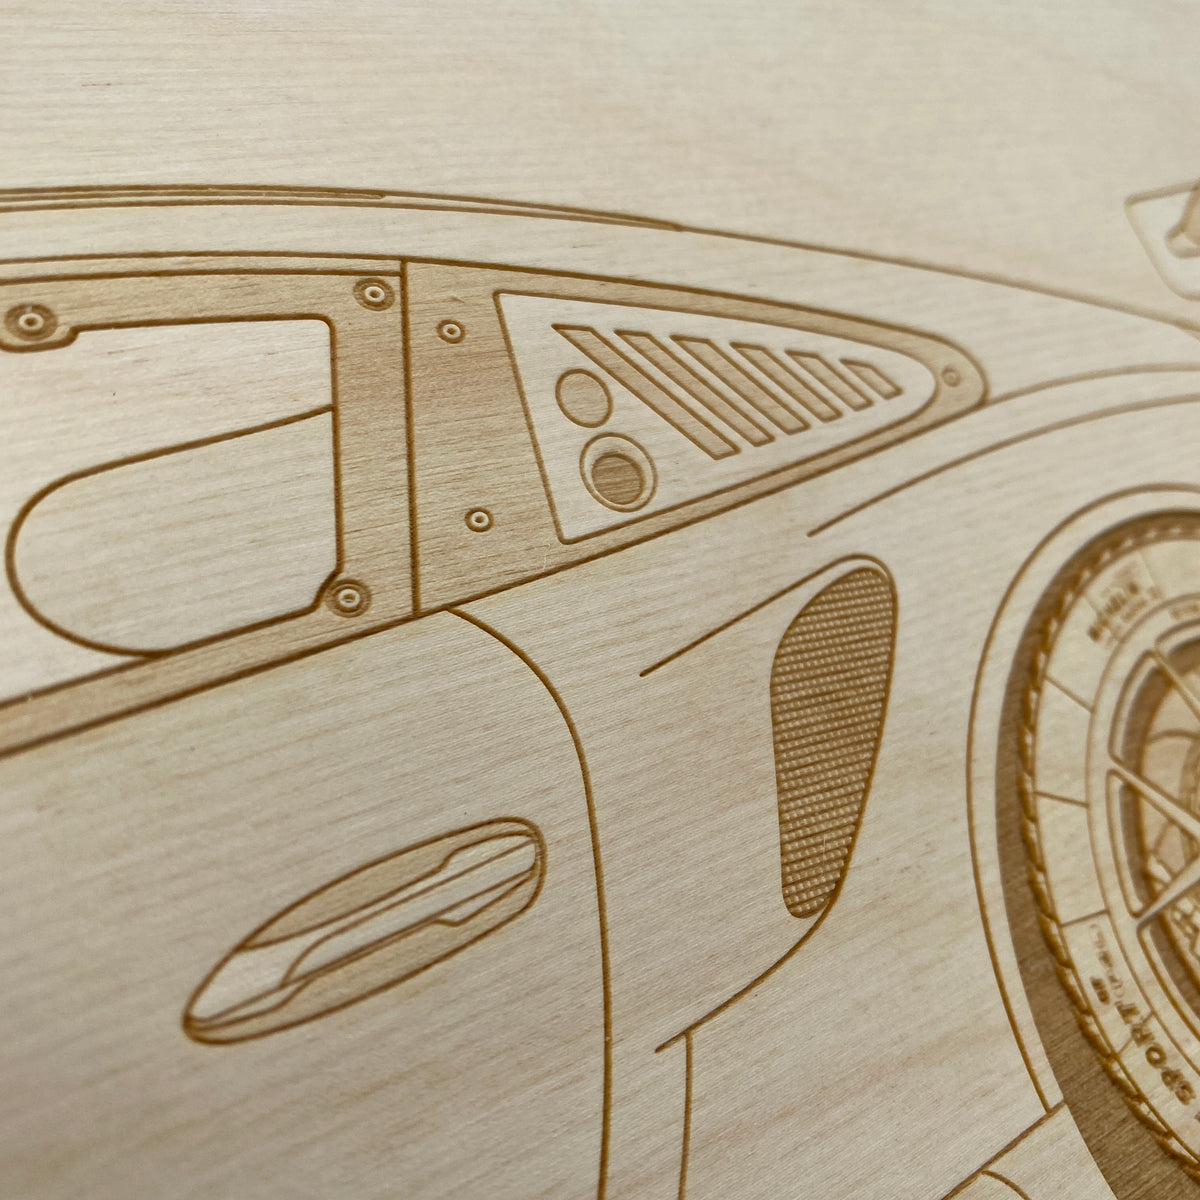 Porsche 911 GT3R Framed Wood Engraved Artwork